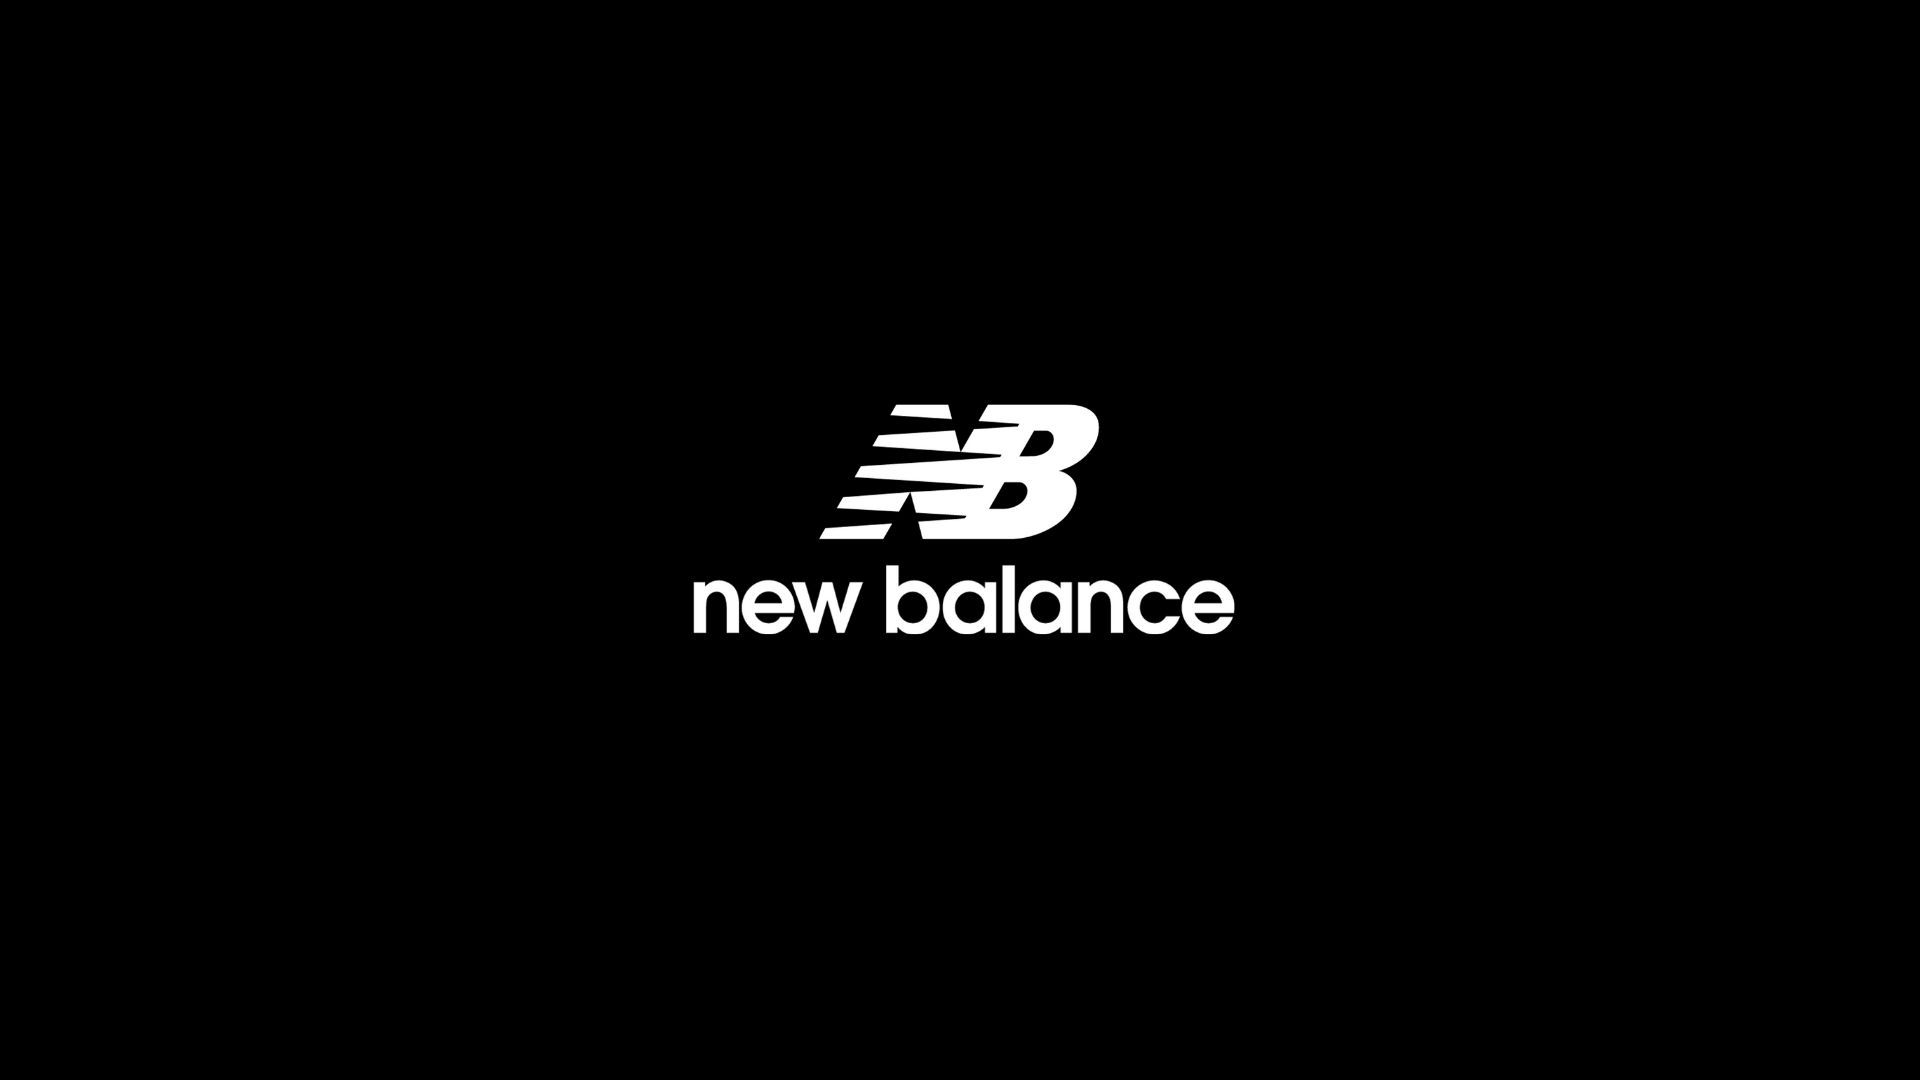 new balance athletic shoe inc